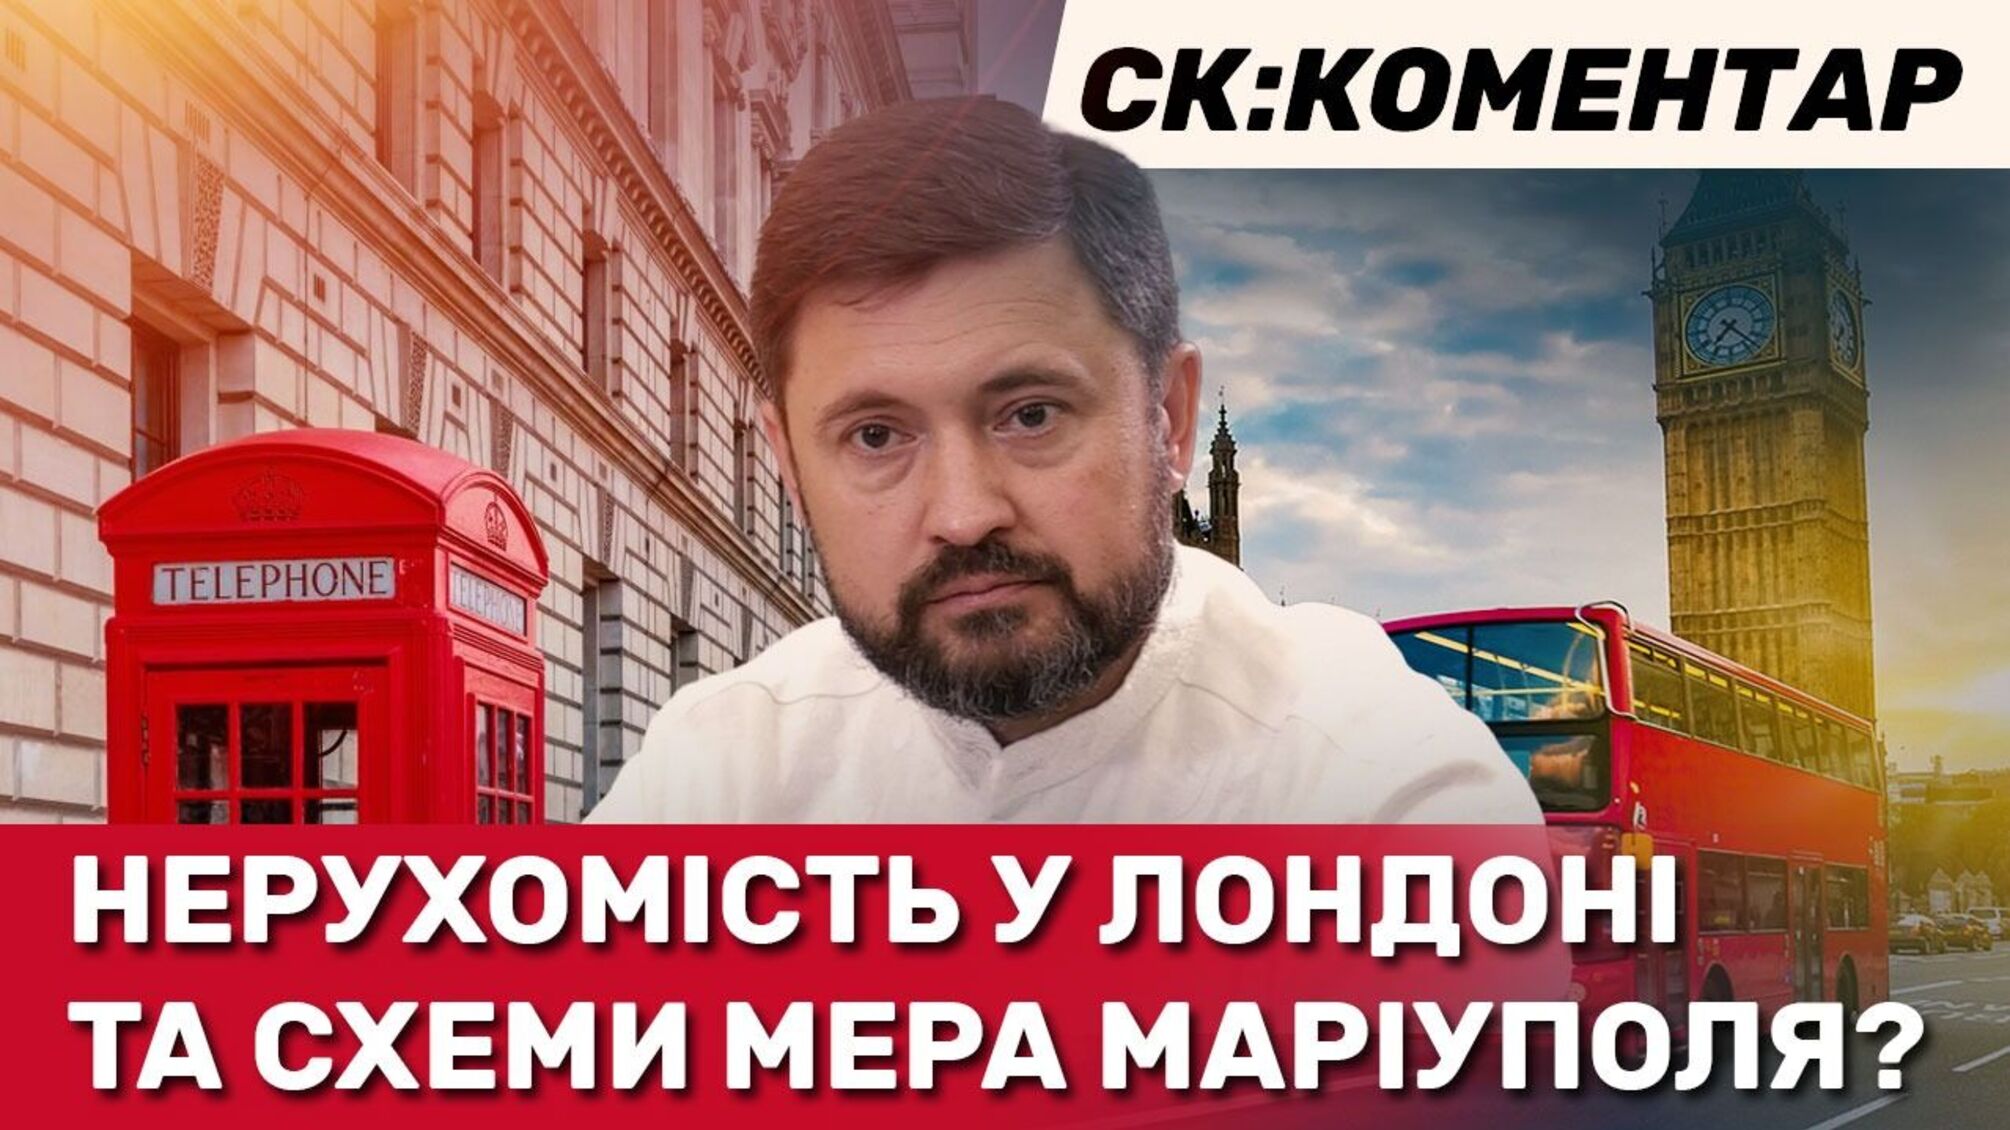 Активист из Мариуполя обвиняет мэра Бойченко в скрытом достатке и причастности к бюджетным махинациям